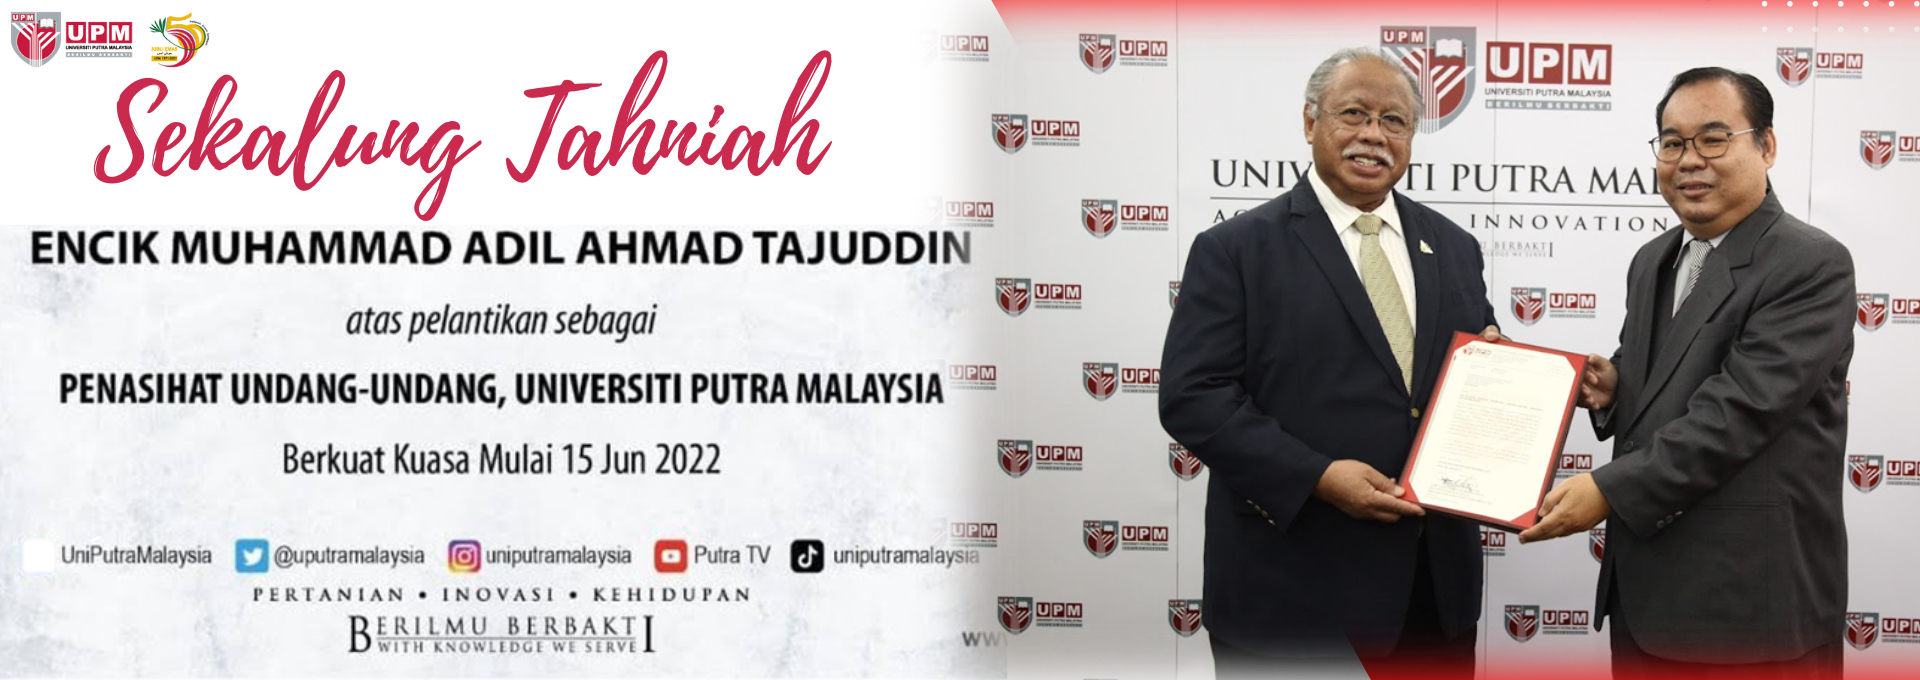 Makluman Pelantikan Encik Muhammad Adil Ahmad Tajuddin Sebagai Penasihat Undang-Undang Universiti Putra Malaysia